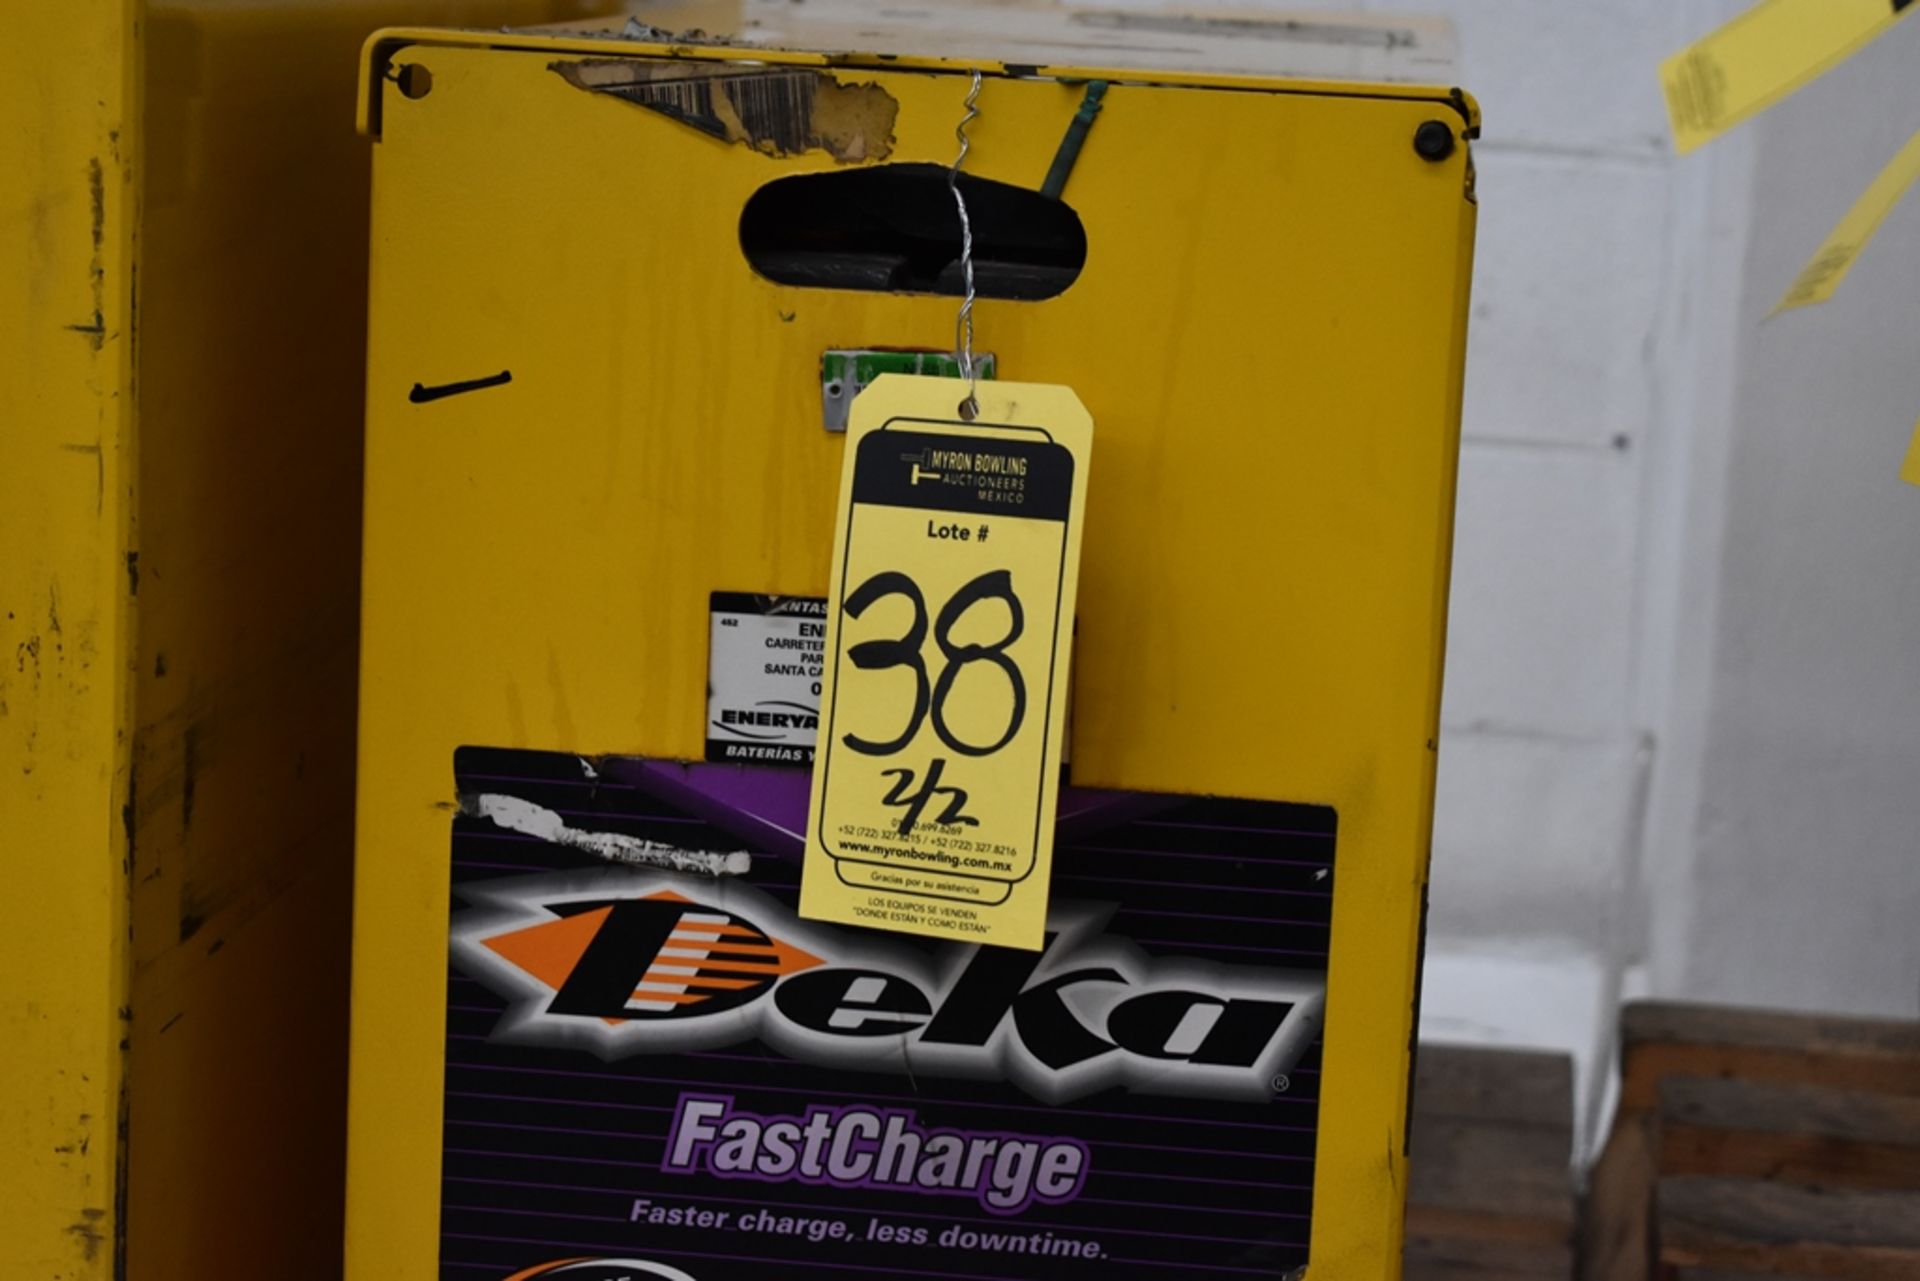 Ametek Prestolite Power Forklift Battery Charger, Model Mate-80 and Battery Brand Deka for 24 volts - Image 12 of 22